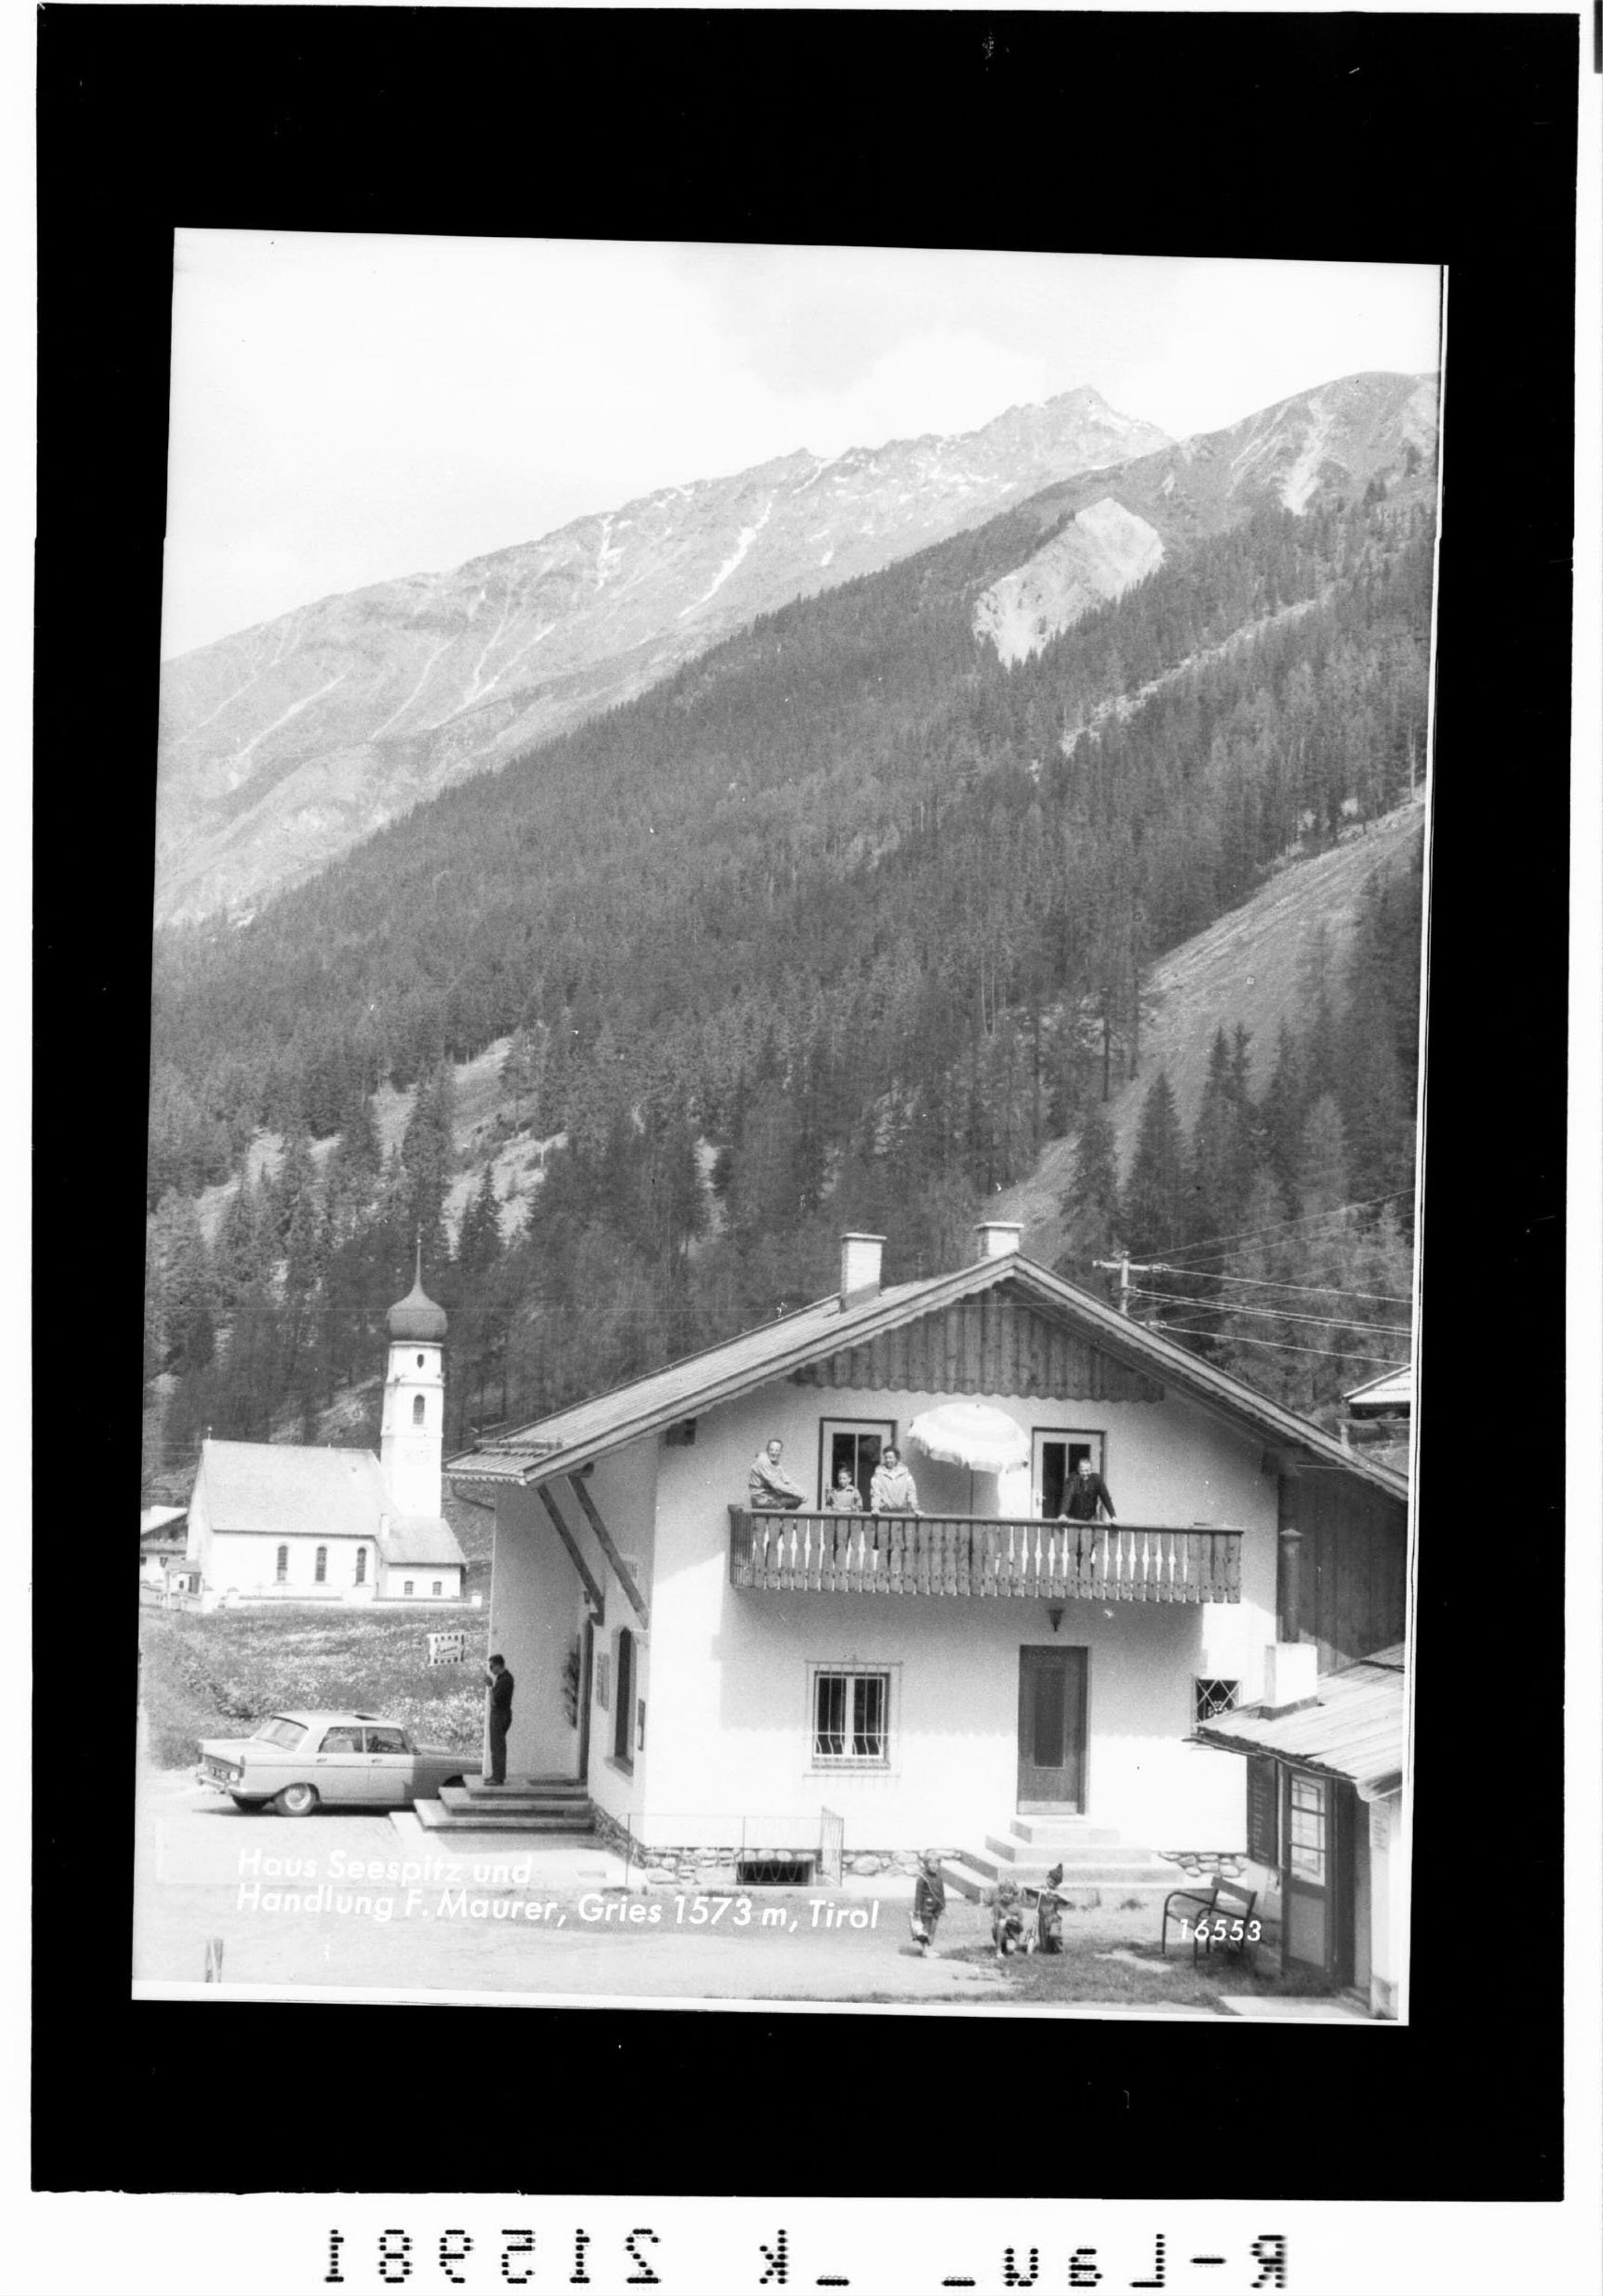 Haus Seespitz und Handlung F.Maurer, Gries 1573 m, Tirol></div>


    <hr>
    <div class=